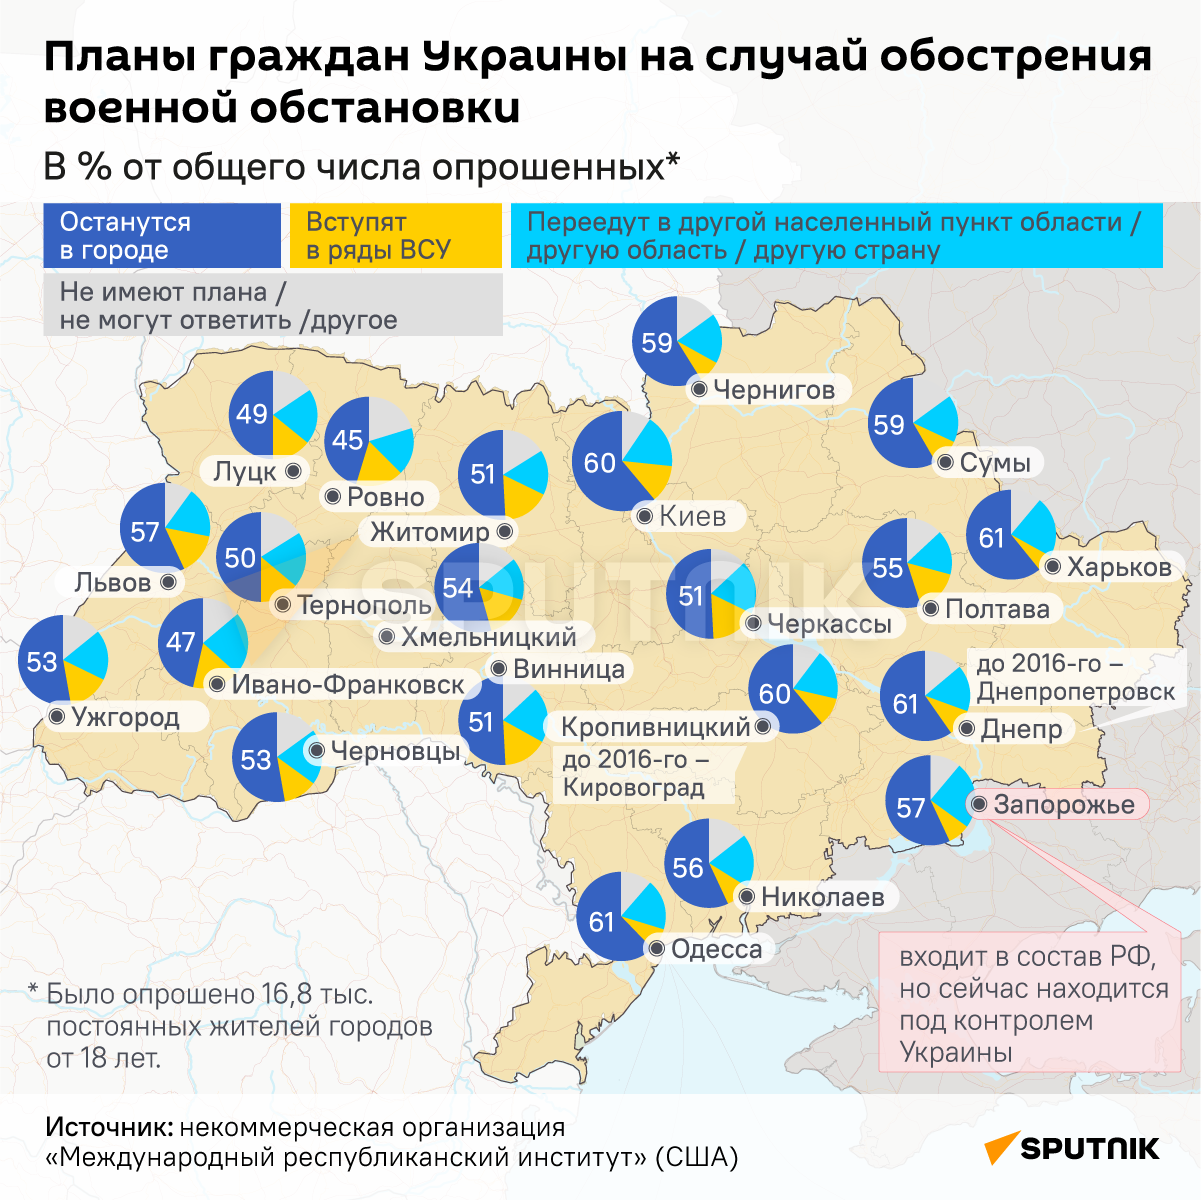 Планы граждан Украины на случай обострения военной обстановки - Sputnik Беларусь